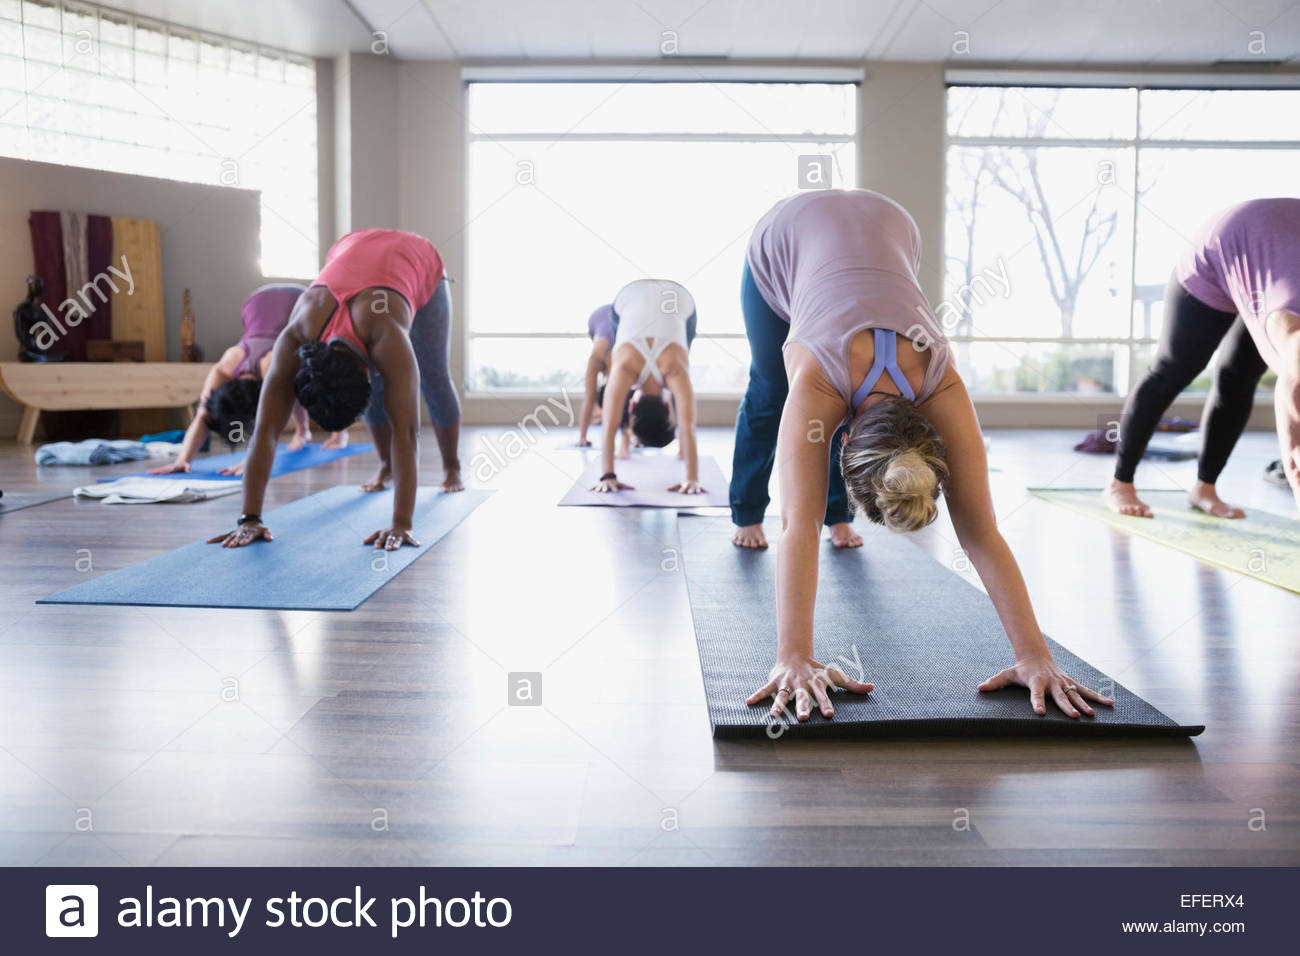 Las mujeres que practican el perro boca abajo en clase de yoga Foto de stock